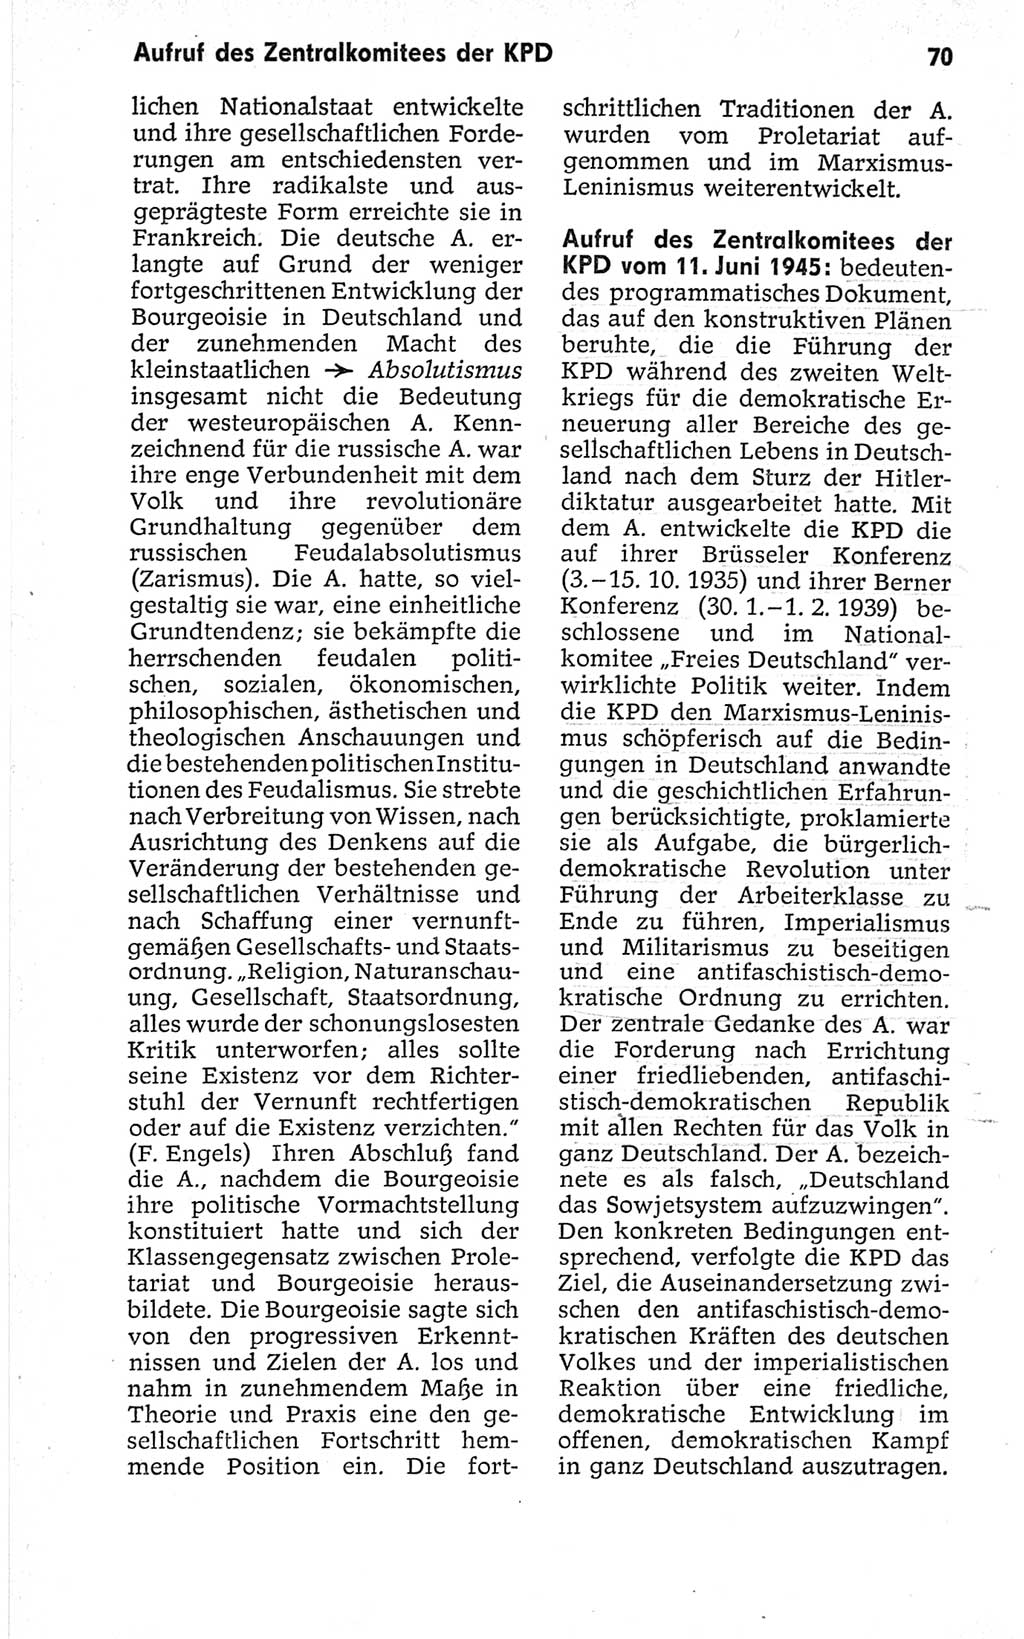 Kleines politisches Wörterbuch [Deutsche Demokratische Republik (DDR)] 1967, Seite 70 (Kl. pol. Wb. DDR 1967, S. 70)